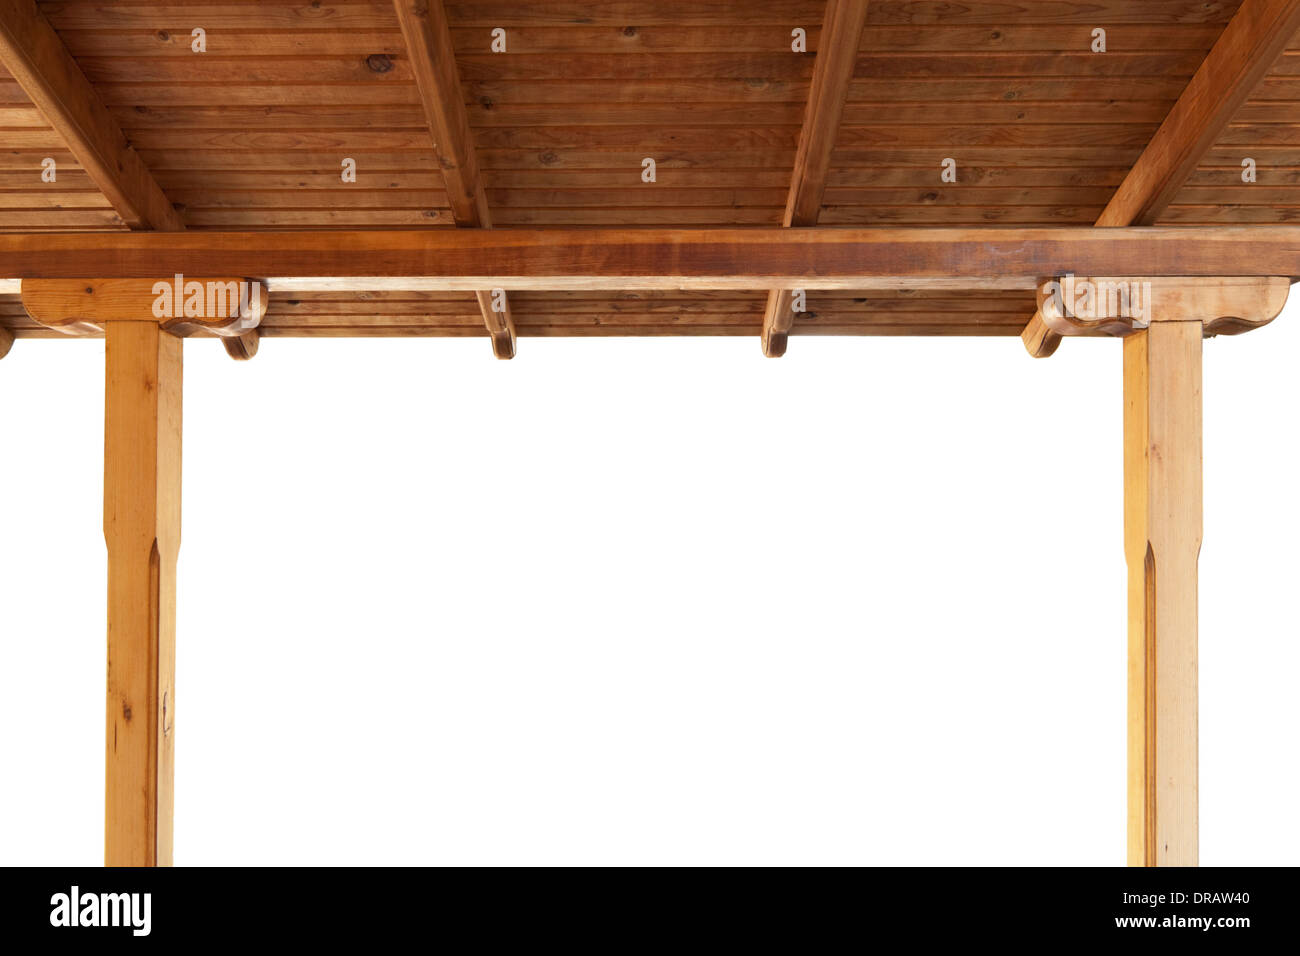 Veranda in Legno tetto vista dall'interno isolato su sfondo bianco Foto Stock